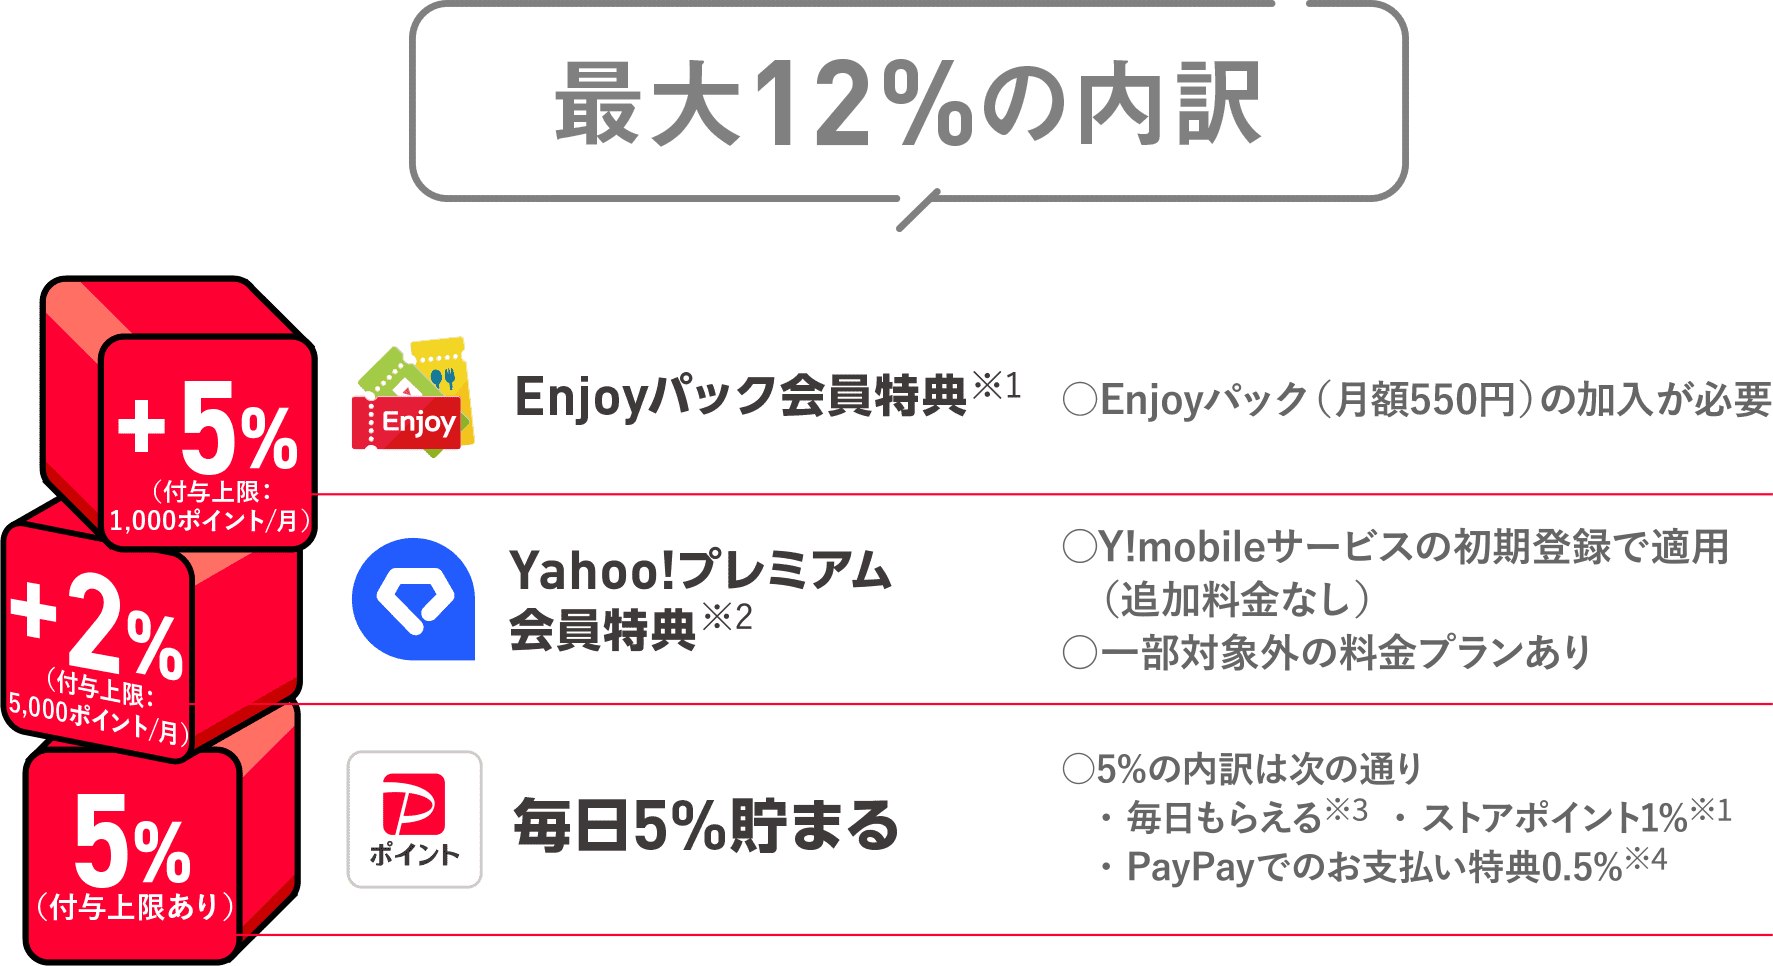 最大12％の内訳　Enjoyパック会員特典+5% Yahoo!プレミアム 会員特典+2% PayPayポイント 毎日5%貯まる